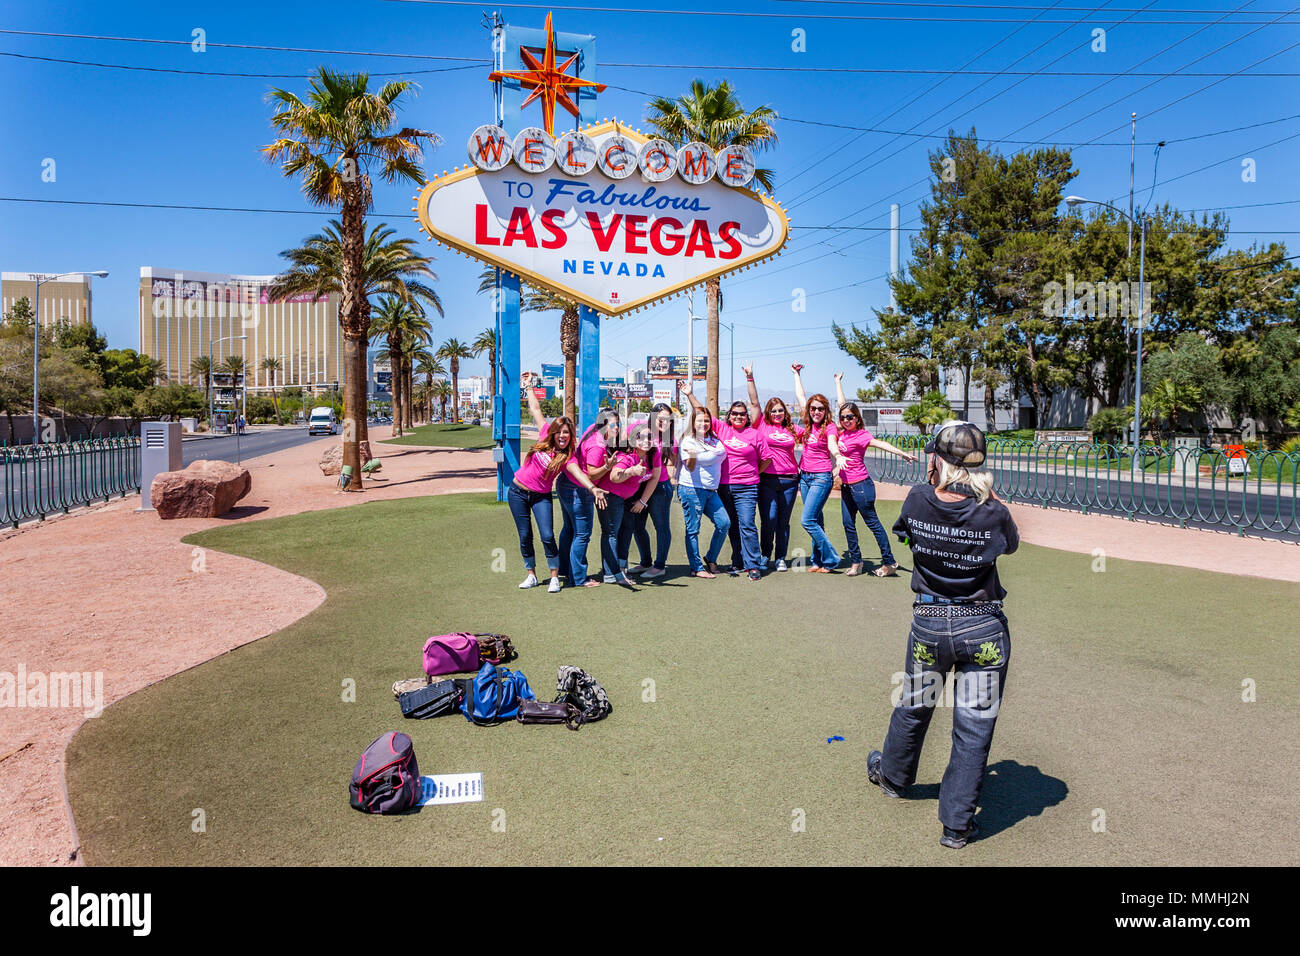 Une fête de mariage en visite pose sous le signe Bienvenue au fabuleux centre-ville de Las Vegas à Las Vegas, Nevada Banque D'Images